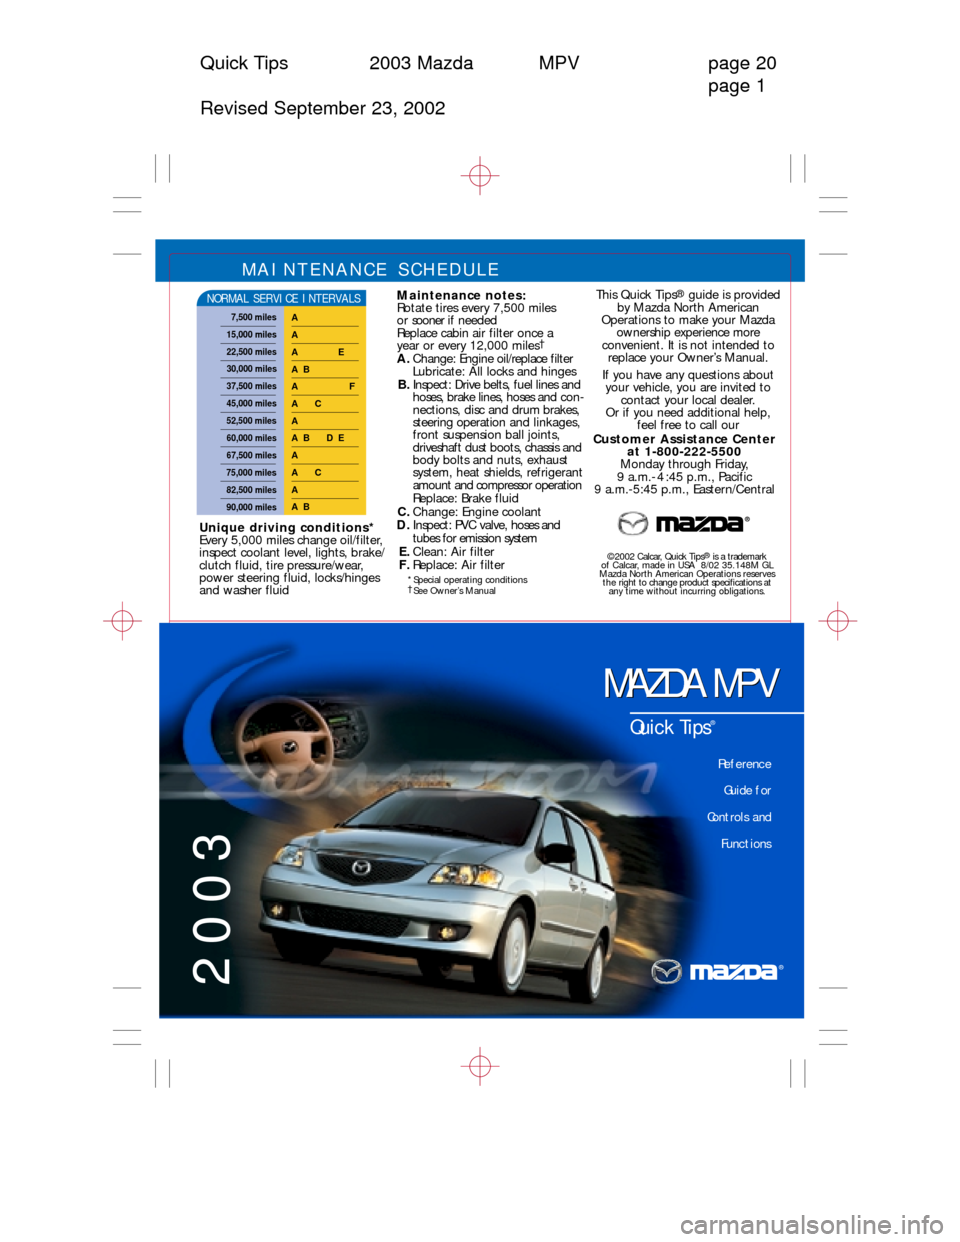 MAZDA MODEL MPV 2003  Quick Tips (in English) 